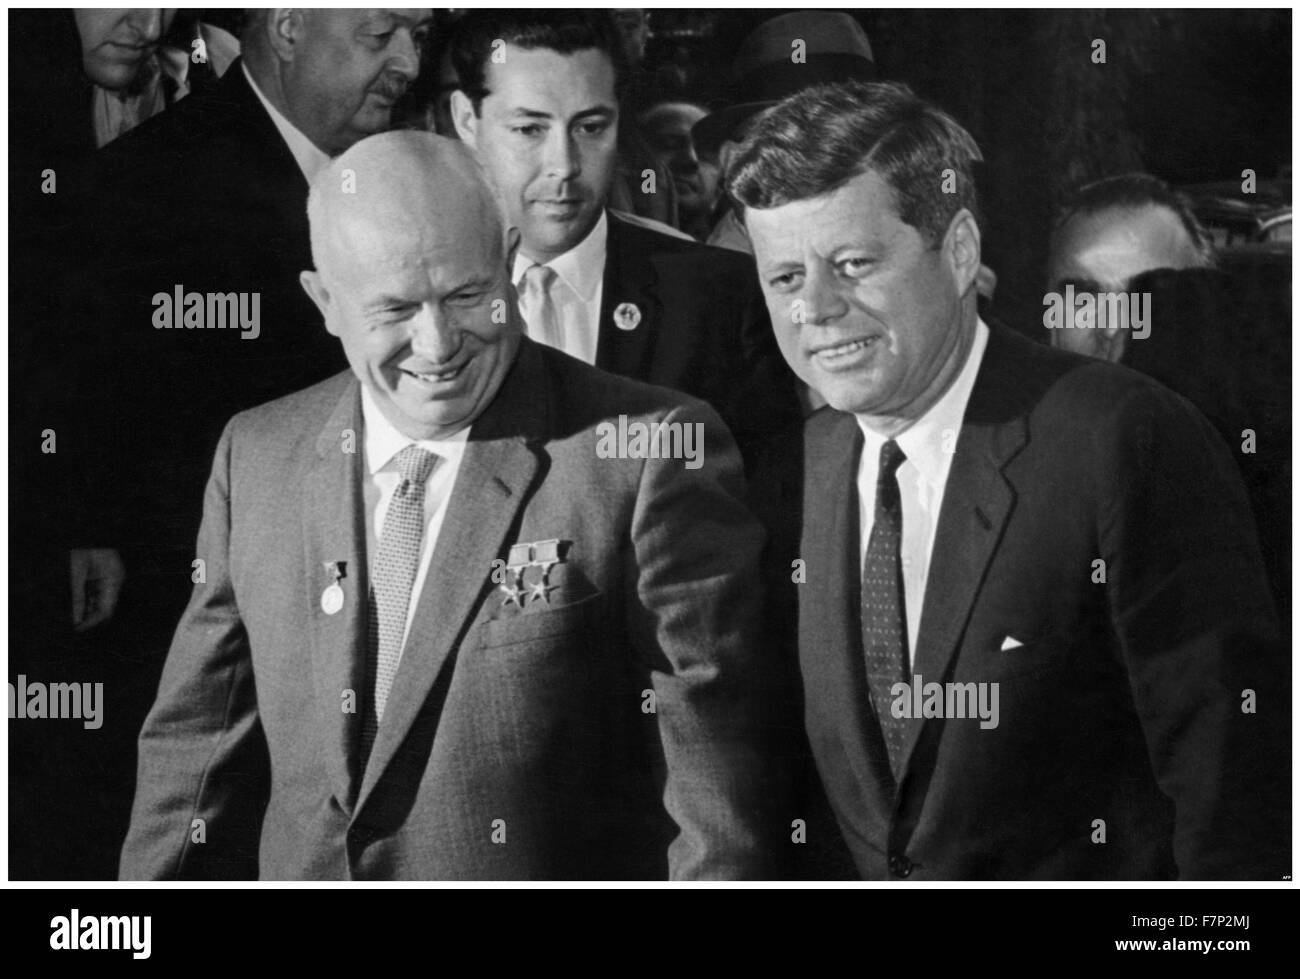 Der Wiener Gipfel war ein Gipfeltreffen am 4. Juni 1961, in Wien, Österreich, zwischen Präsident John F. Kennedy der Vereinigten Staaten und Premier Nikita Khrushchev der Sowjetunion statt. Die Staats-und Regierungschefs der beiden Supermächte des Kalten Krieges diskutiert zahlreiche Fragen in der Beziehung zwischen ihren Ländern. Stockfoto